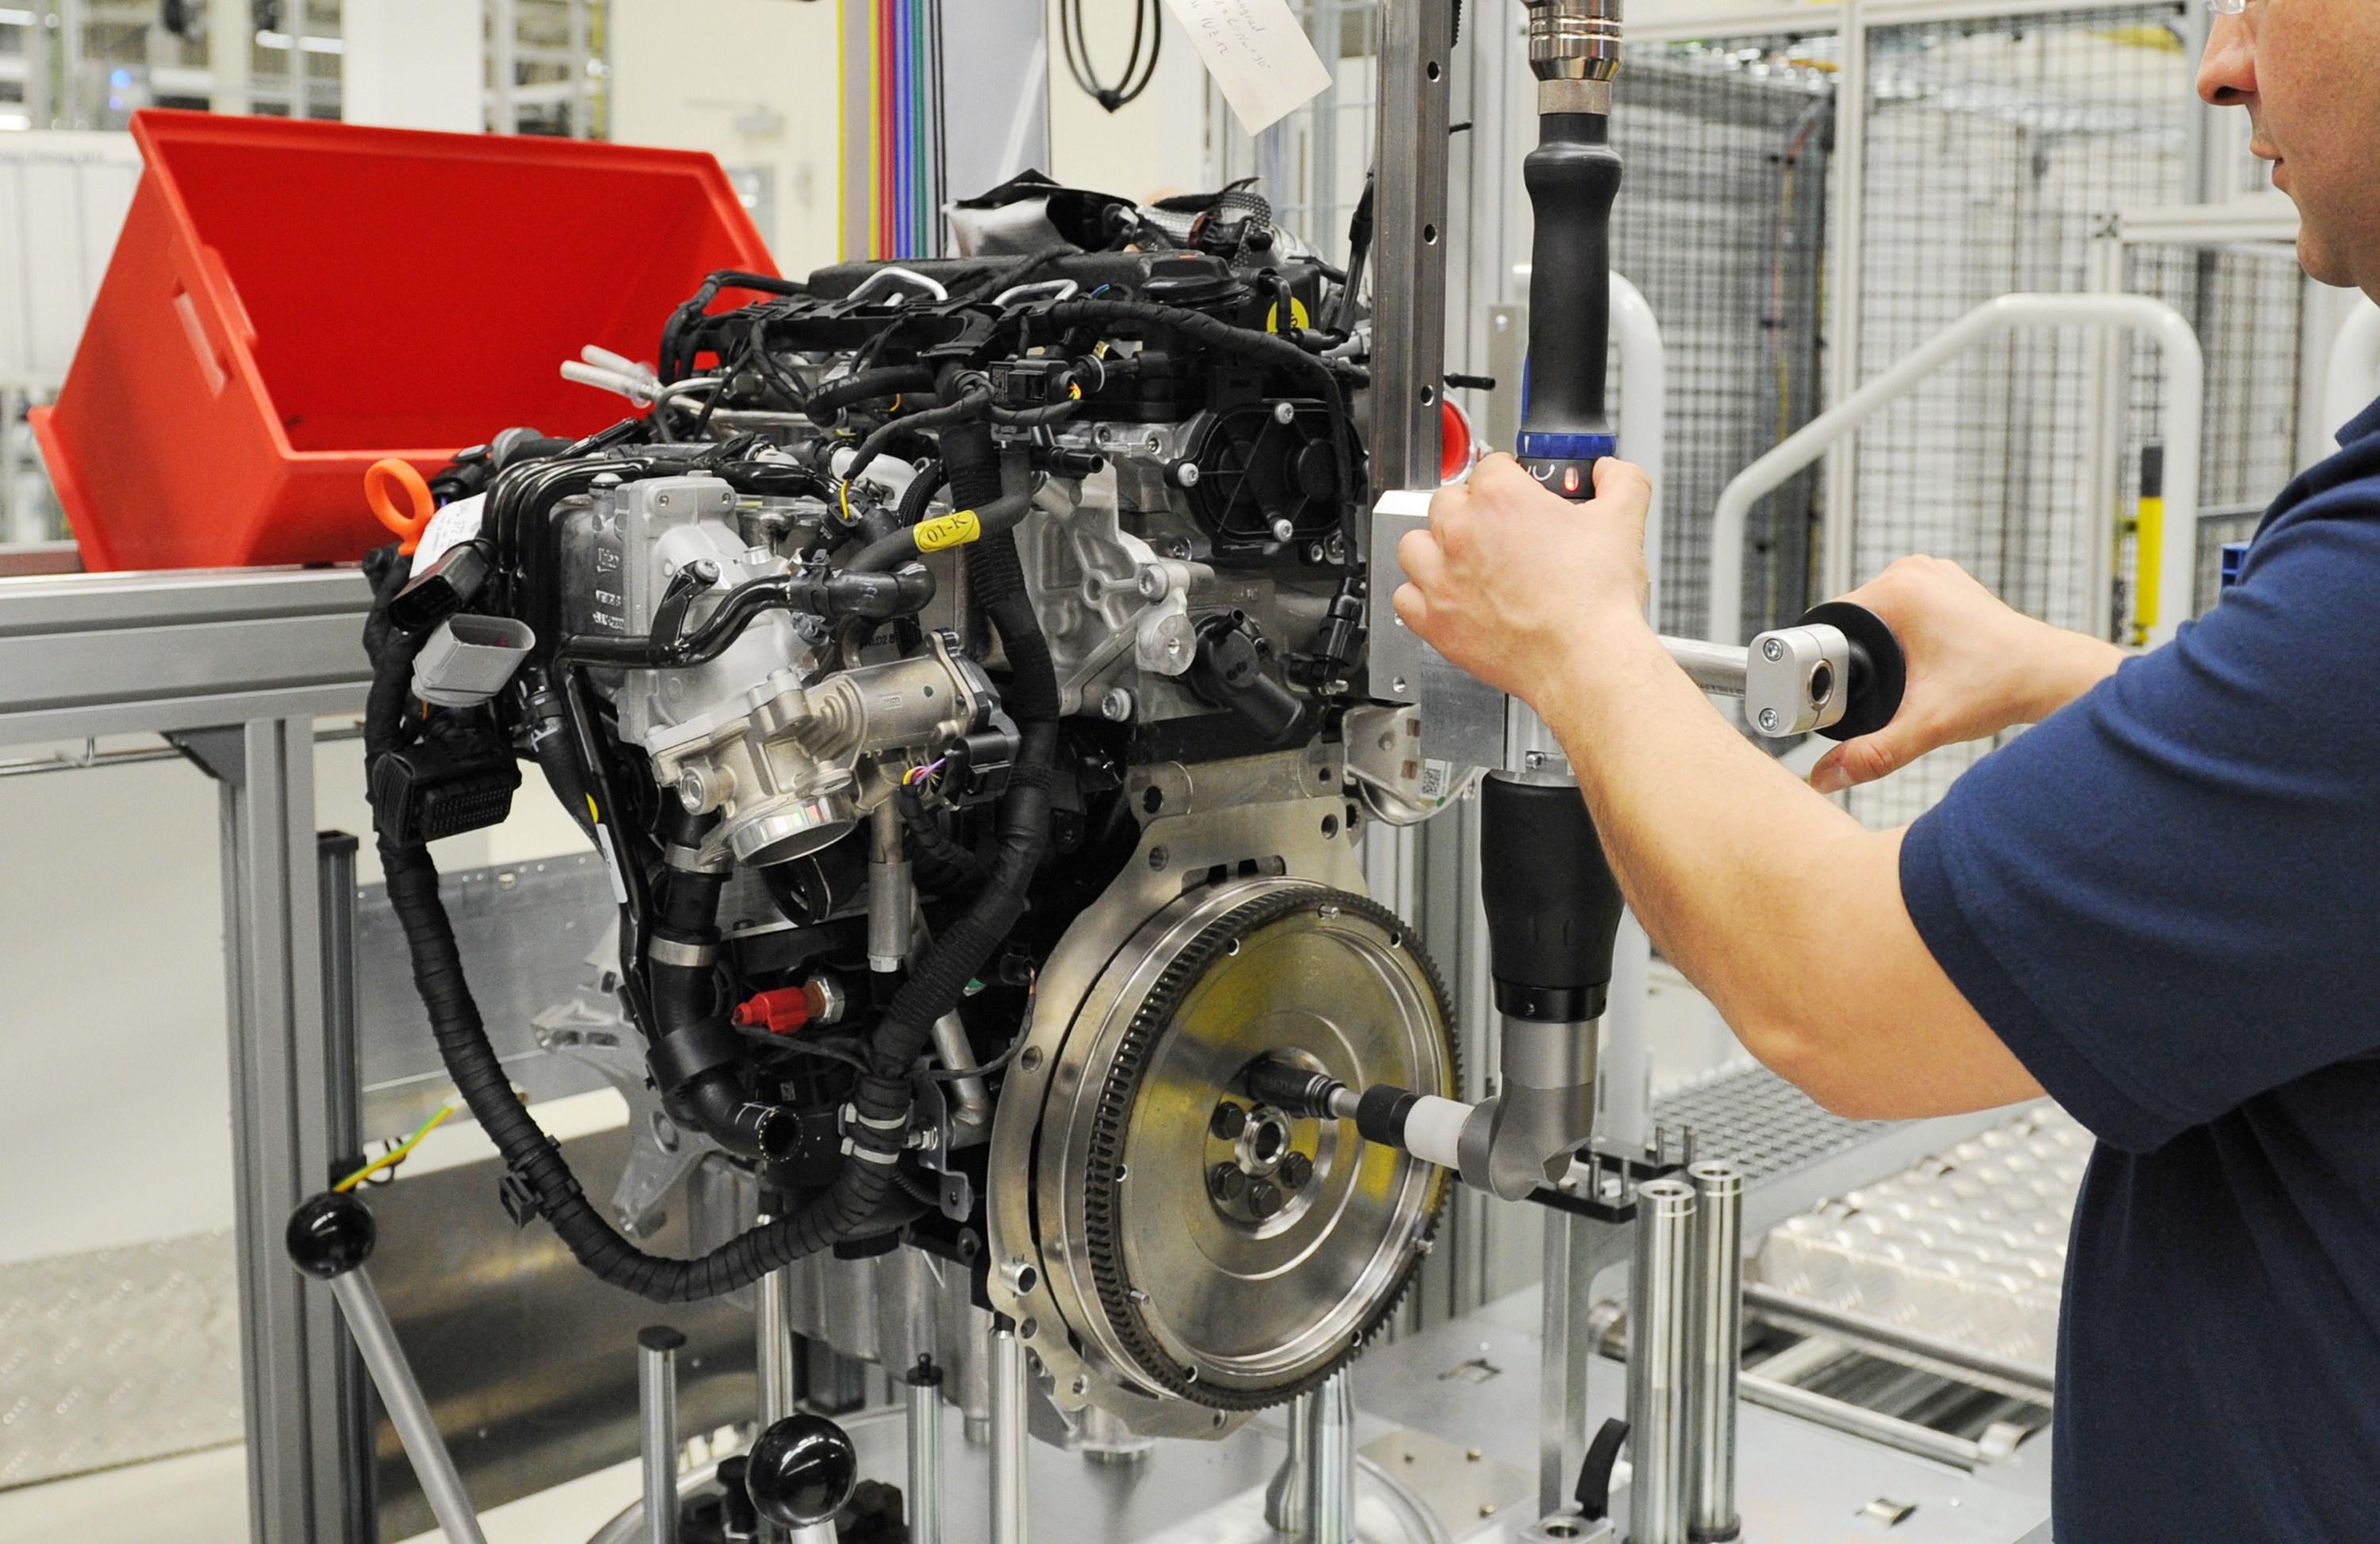 
Volkswagens tekniker får skynda sig att förbättra dieselmotorerna så att bilarna på marknaden kan åtgärdas och trovärdigheten återställas. Bilden är tagen i en tysk Volkswagen-fabrik 2012. Foto: Julian Stratenschulte/AFP/Getty Images